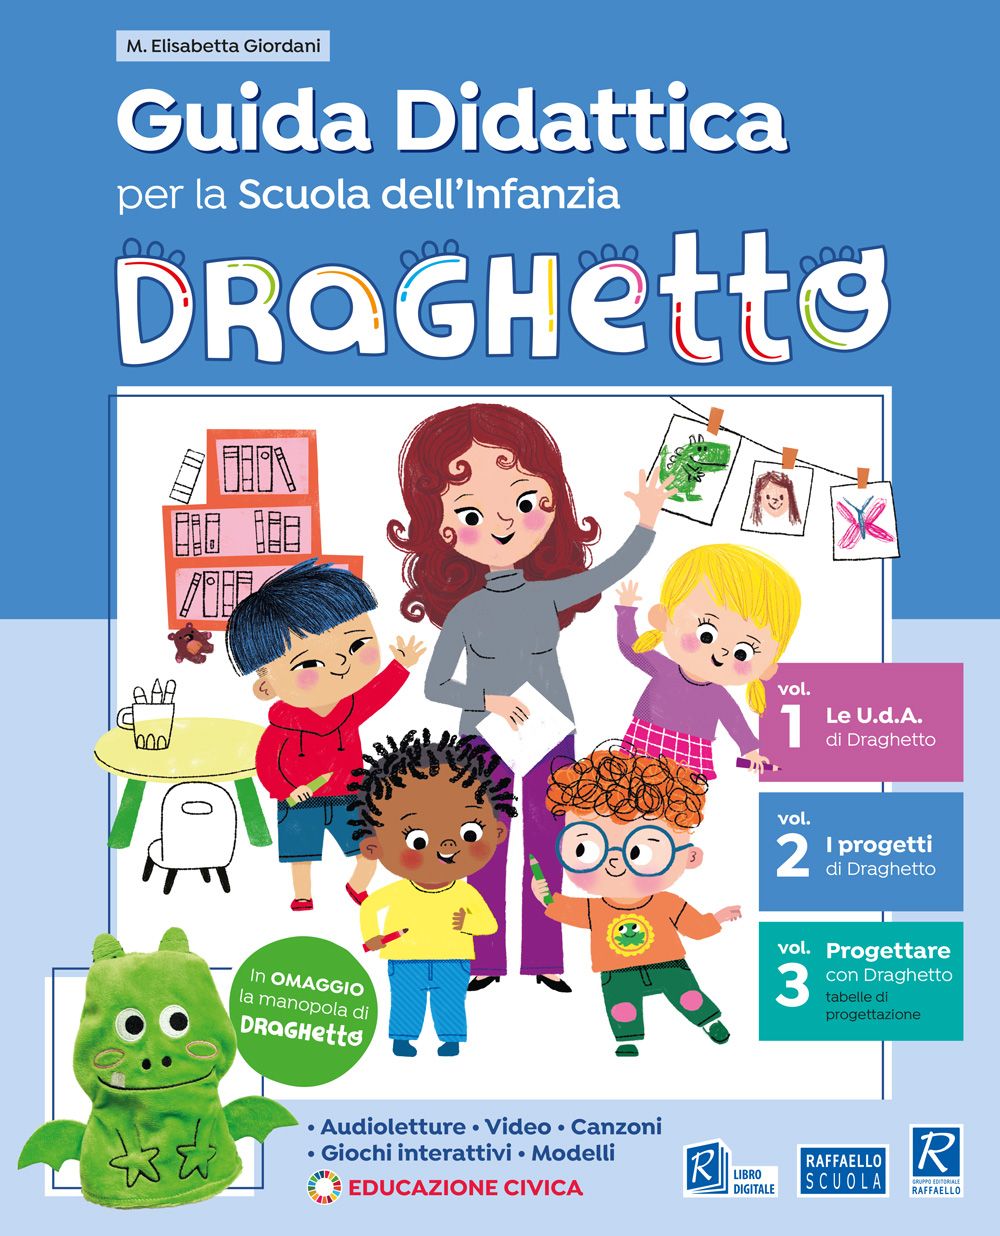 Guida - Draghetto - Raffaello Scuola